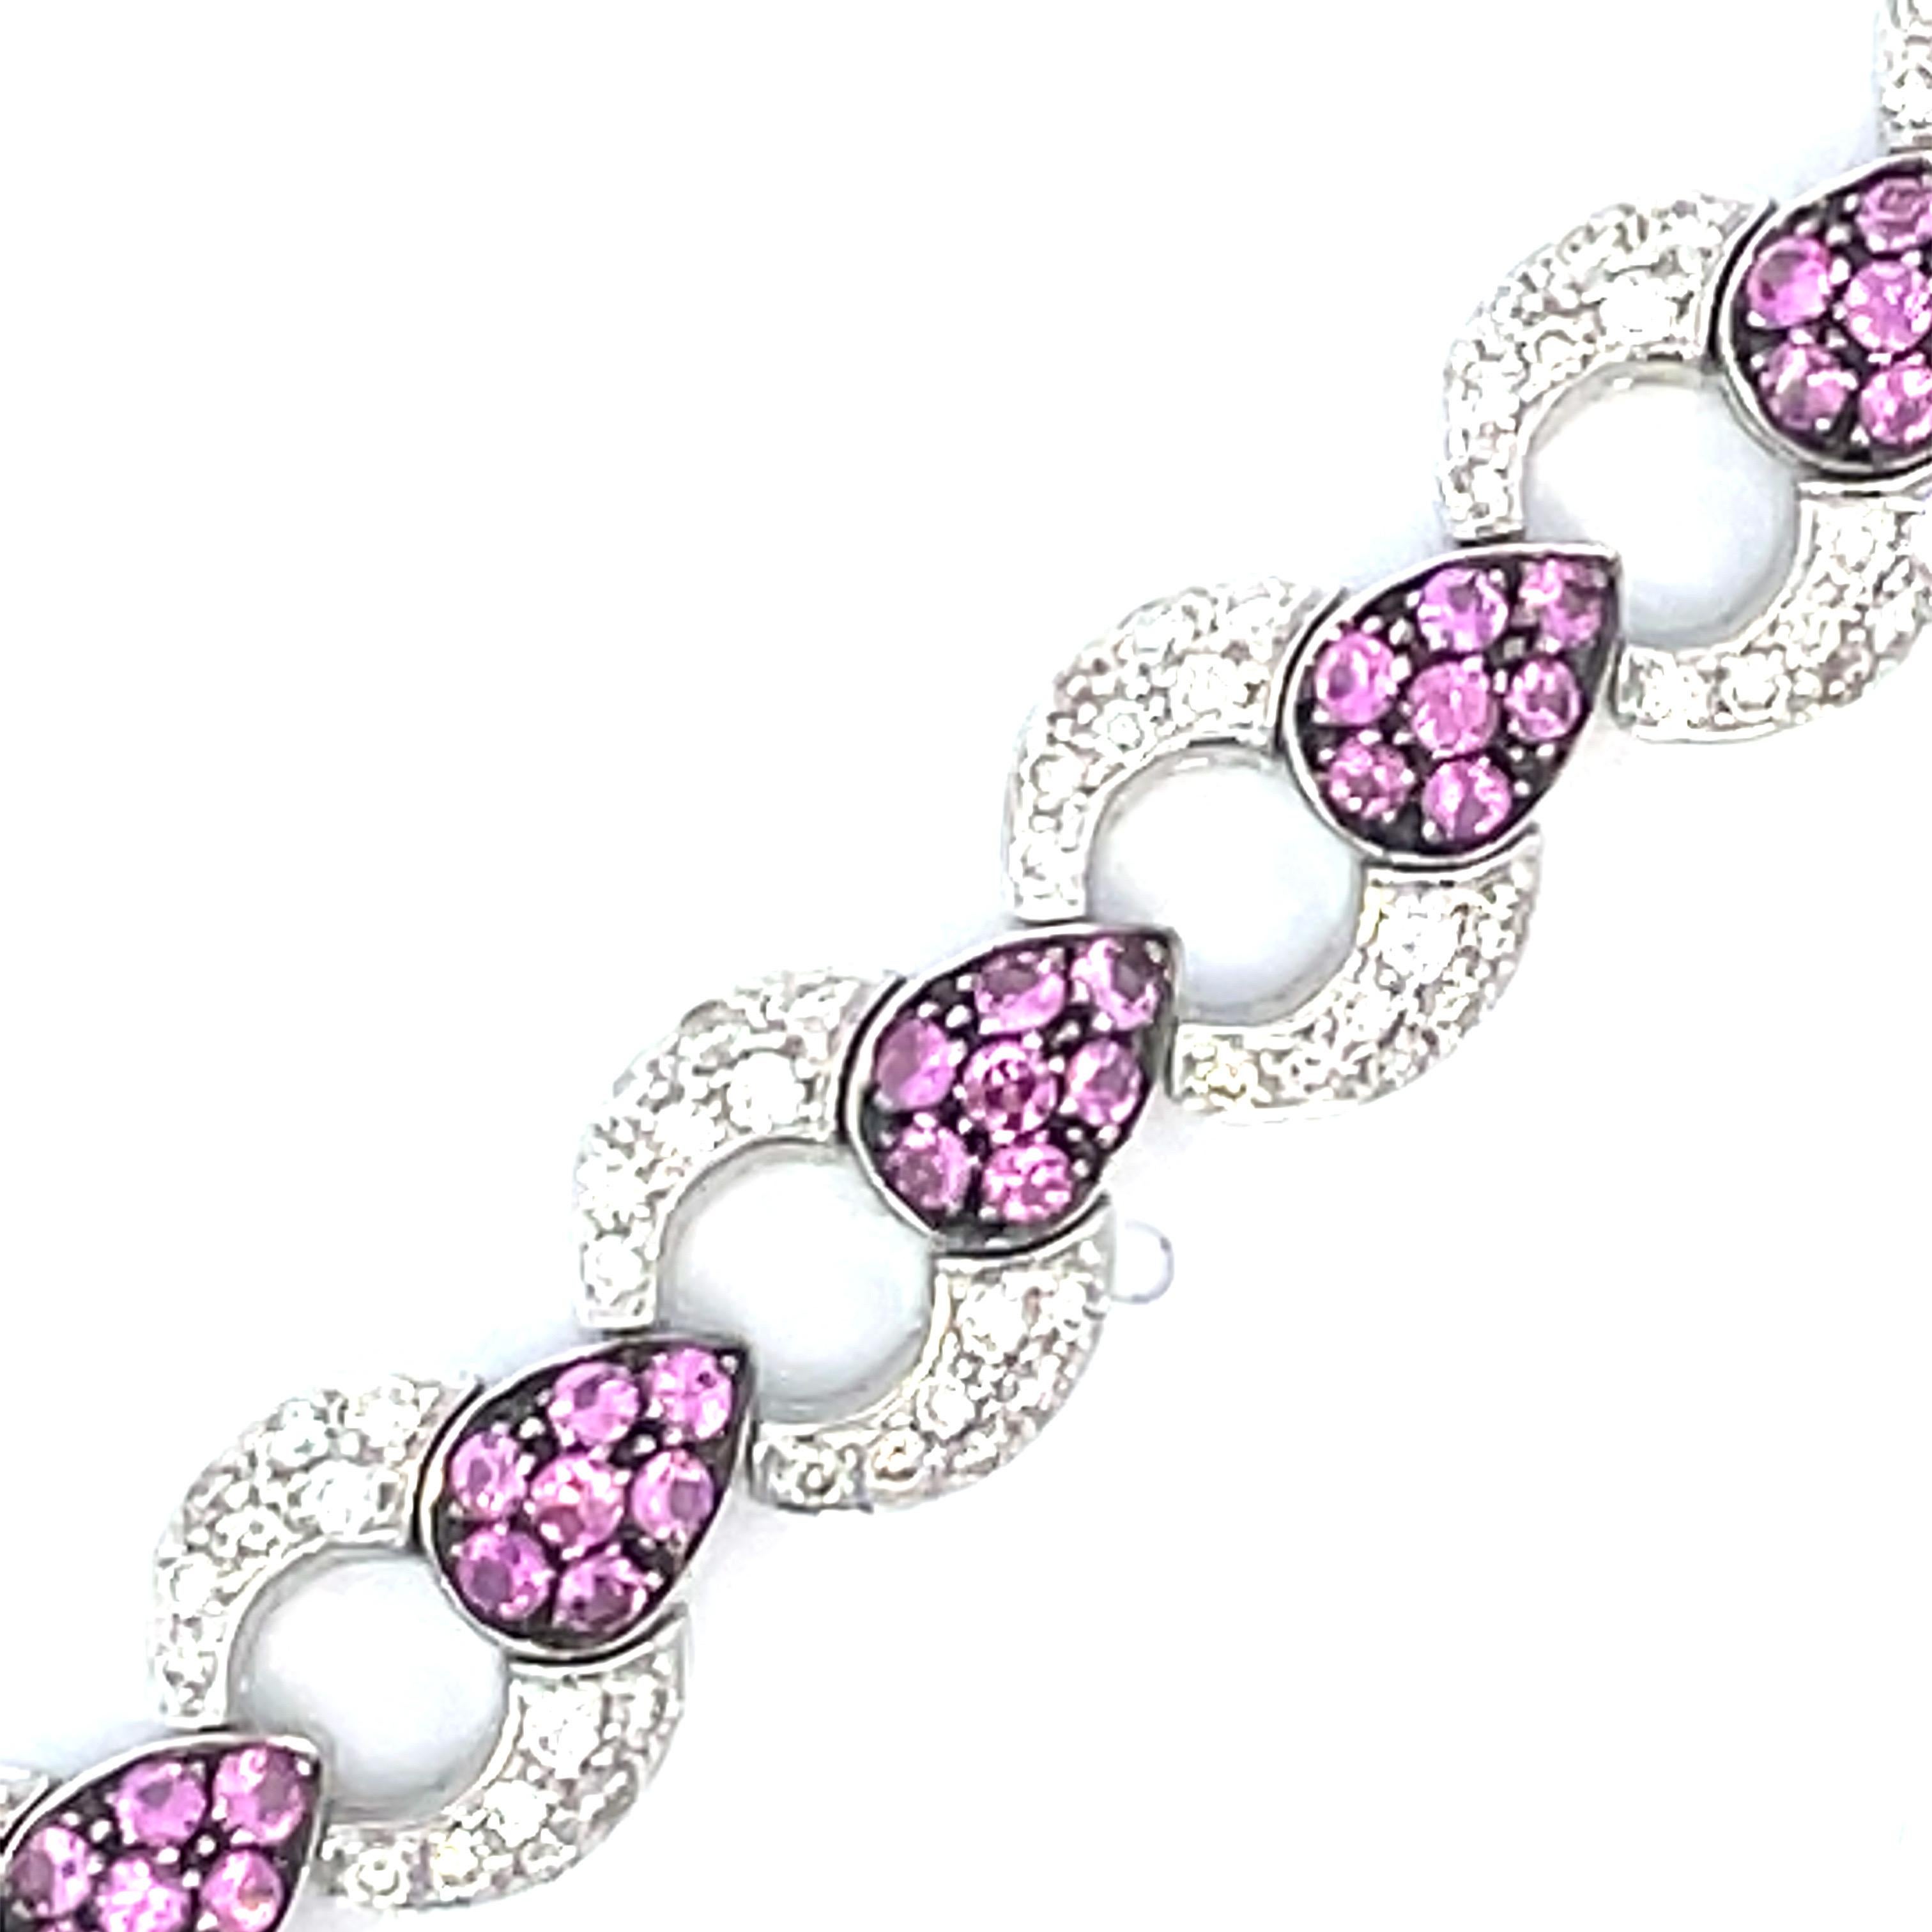 Eine elegante  Gliederarmband mit abwechselnd gepflasterten weißen Naturdiamanten und  ein schwarzes Rhodium-Finish um den natürlichen rosa Saphir in Birnenform aus 18-karätigem Weißgold.

112 natürliche rosa Saphire mit einem Gesamtgewicht von